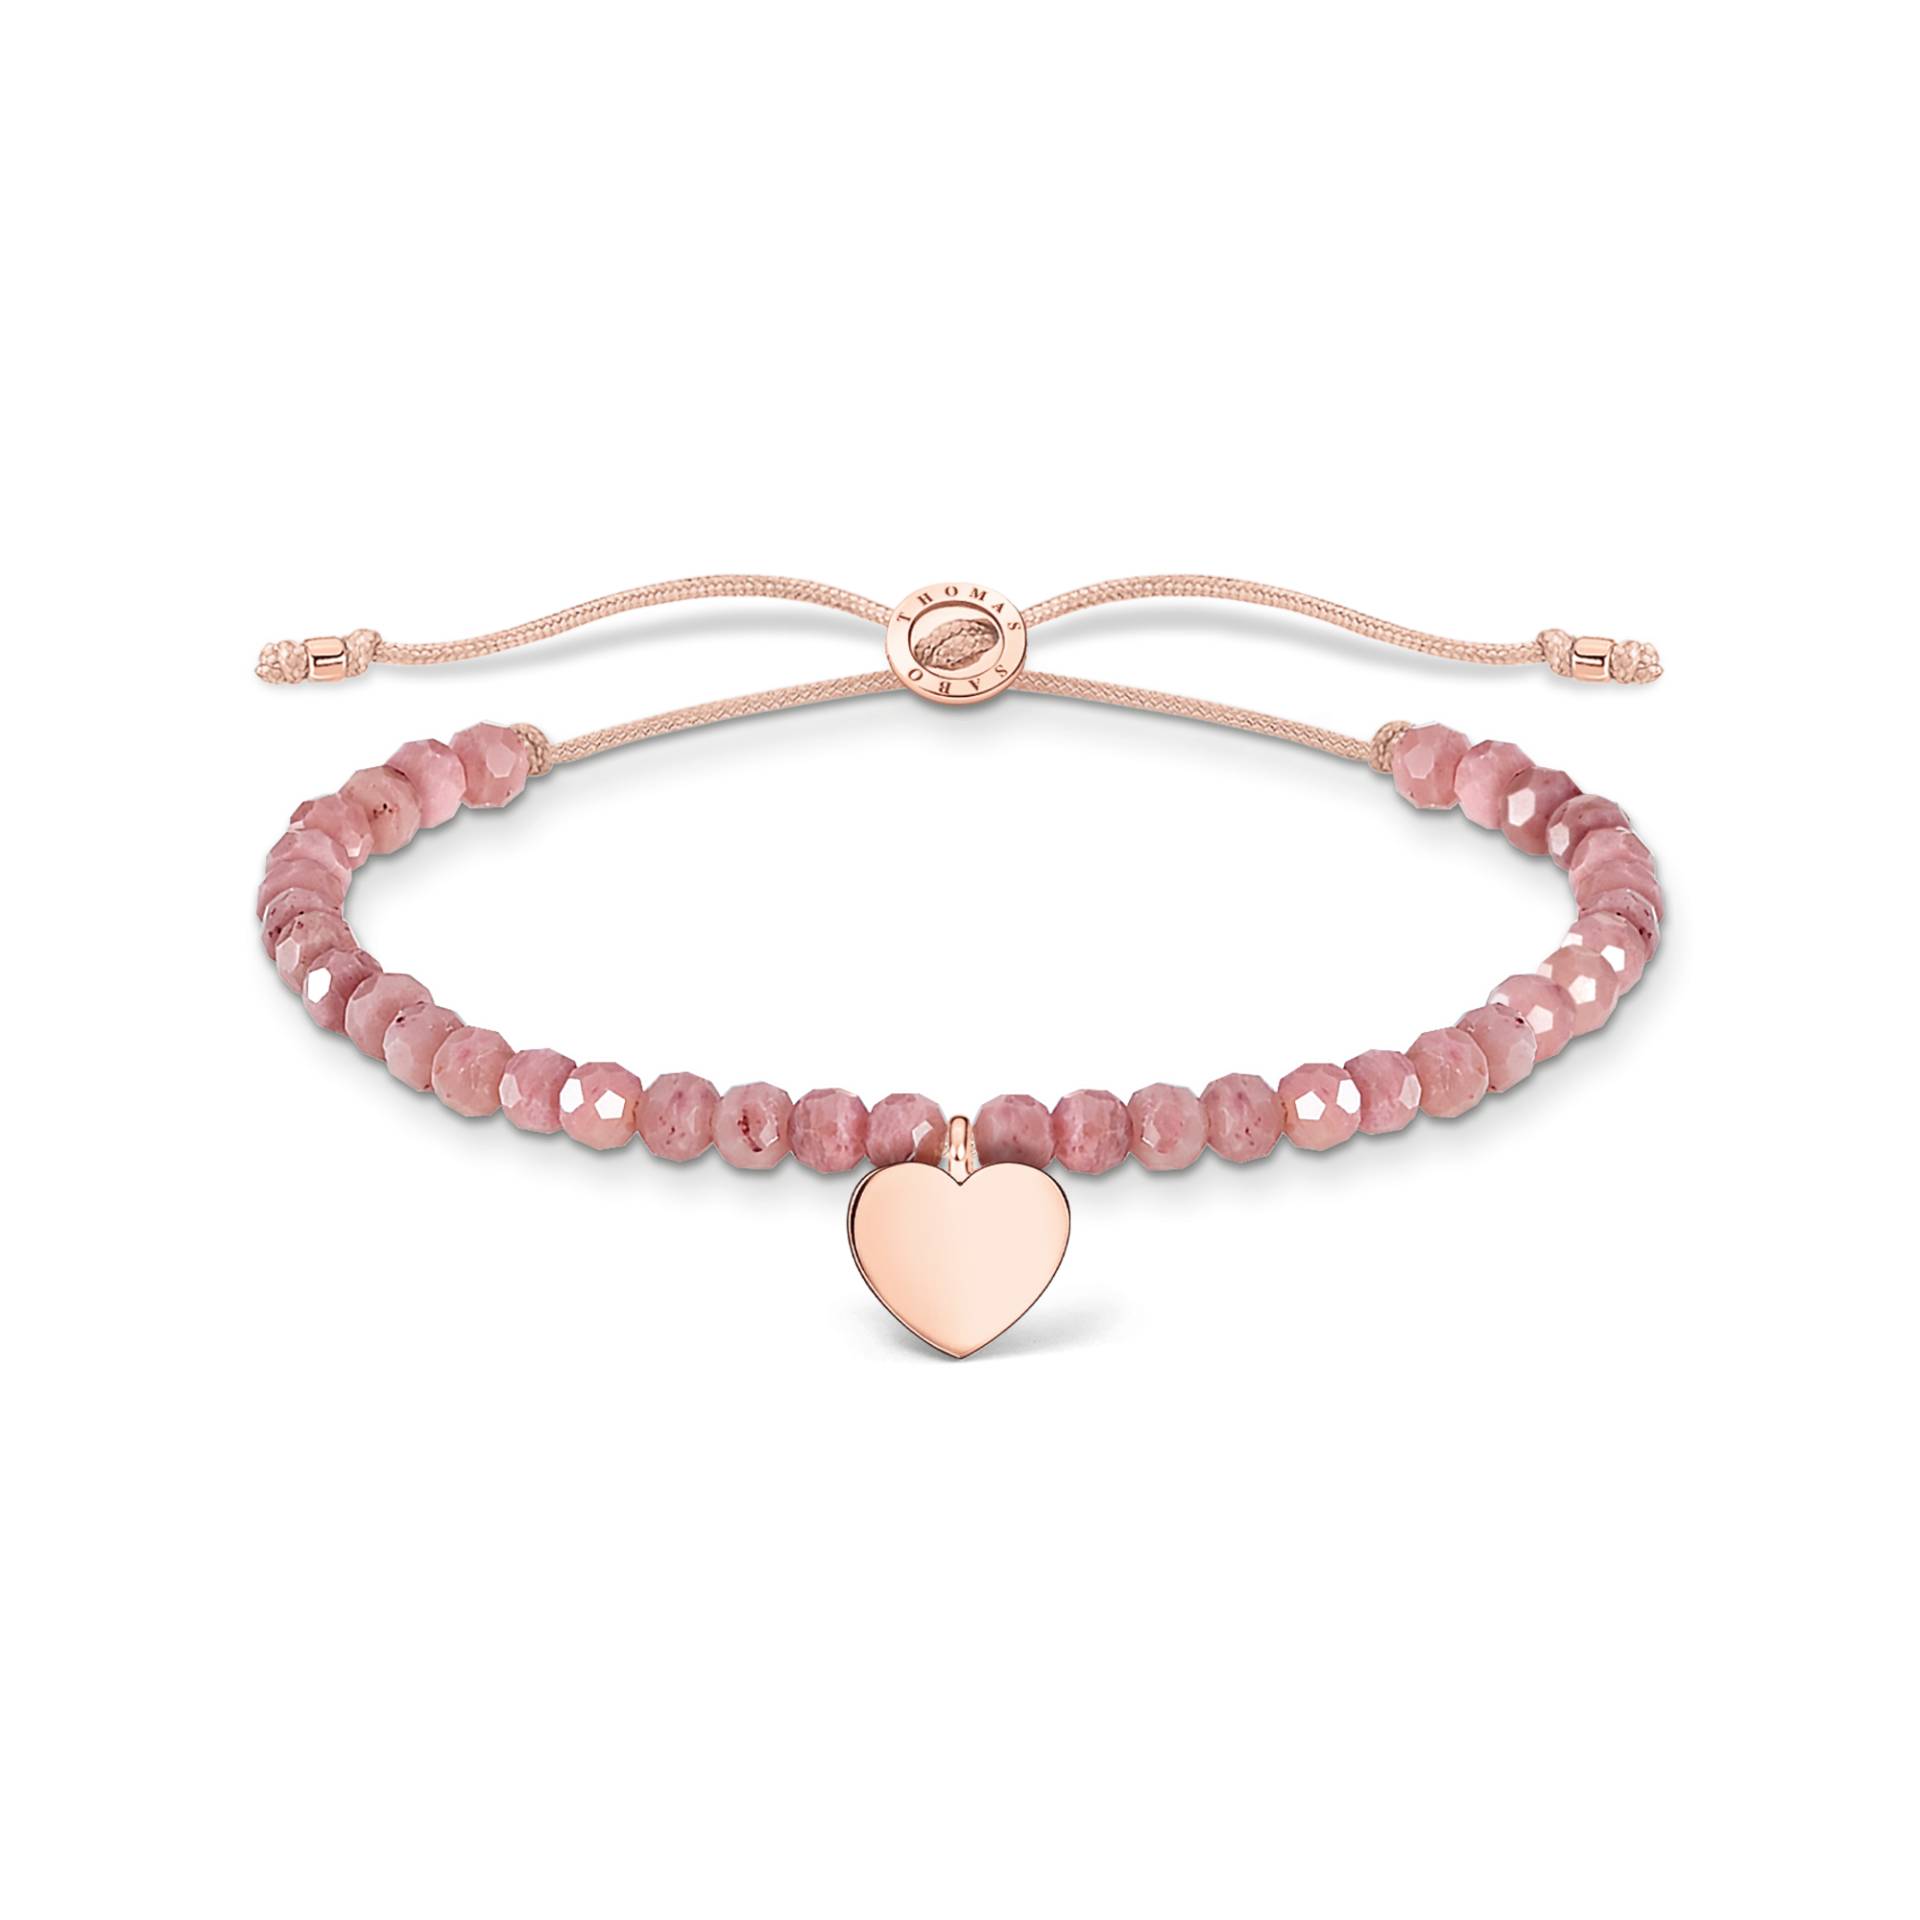 Thomas Sabo Armband mit rosa Jaspis-Beads und Herz verroségoldet pink A1985-893-9-L20V von Thomas Sabo